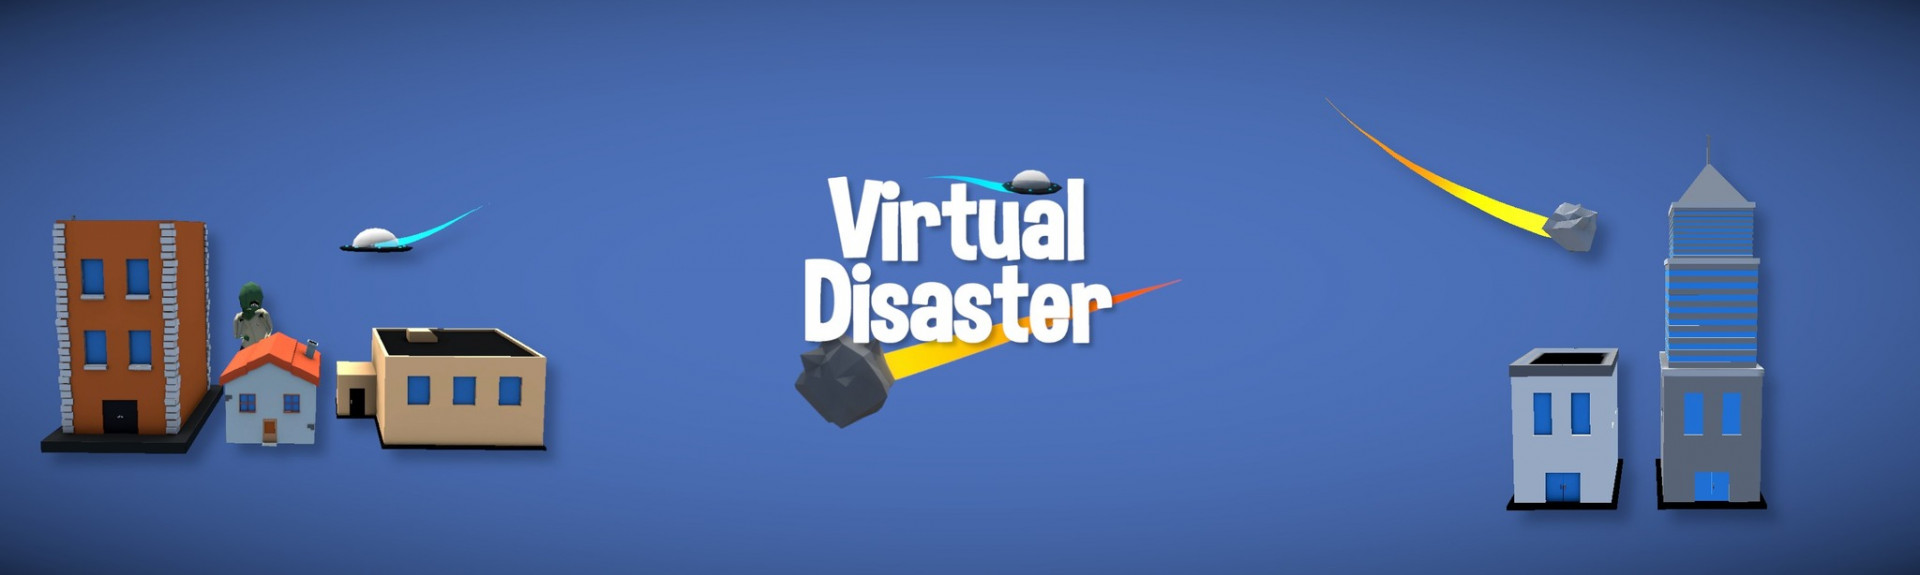 Virtual Disaster